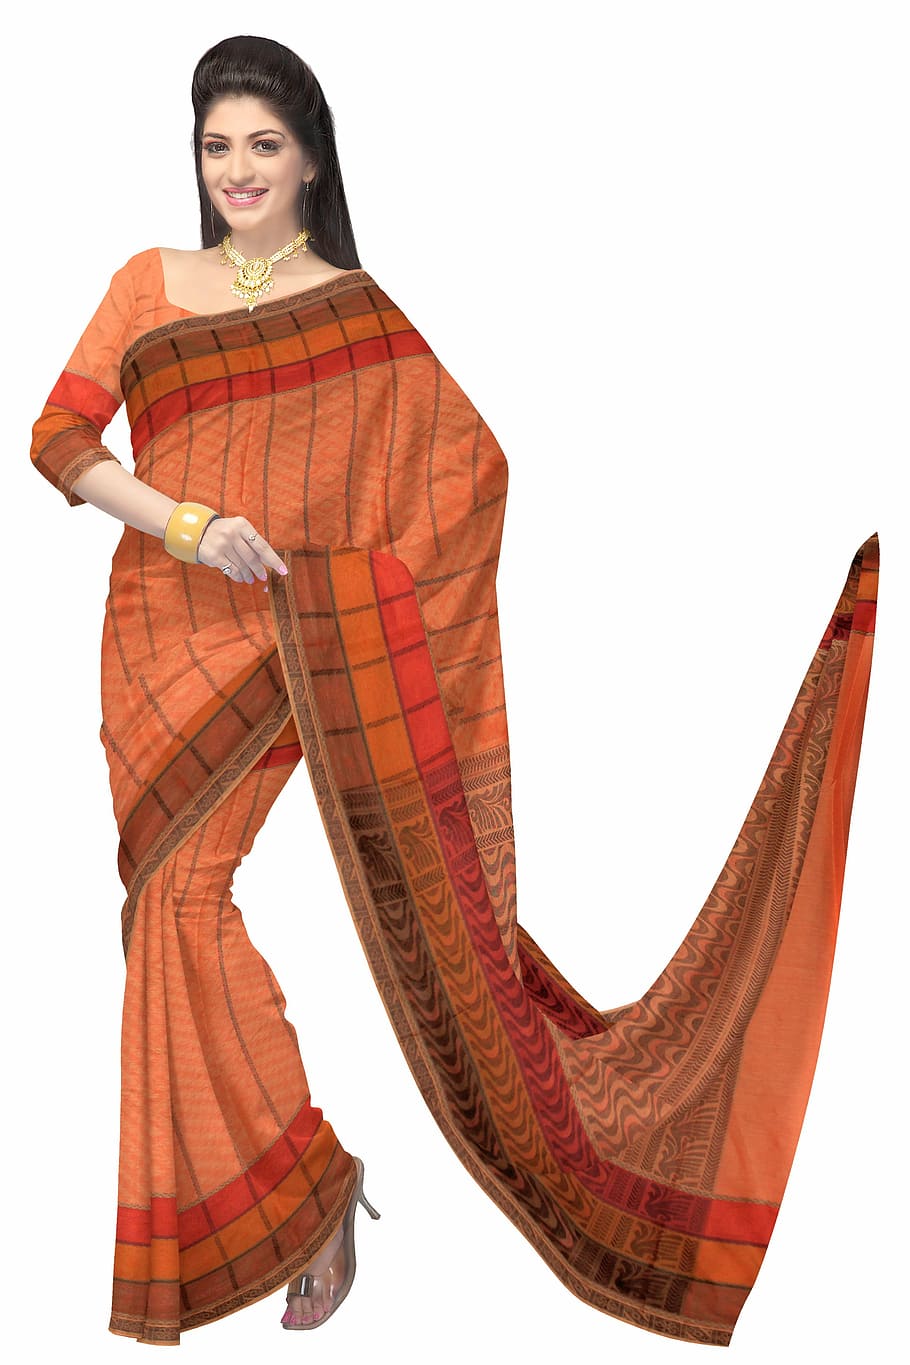 sari, ropa india, moda, seda, vestido, mujer, modelo, ropa, india, algodón